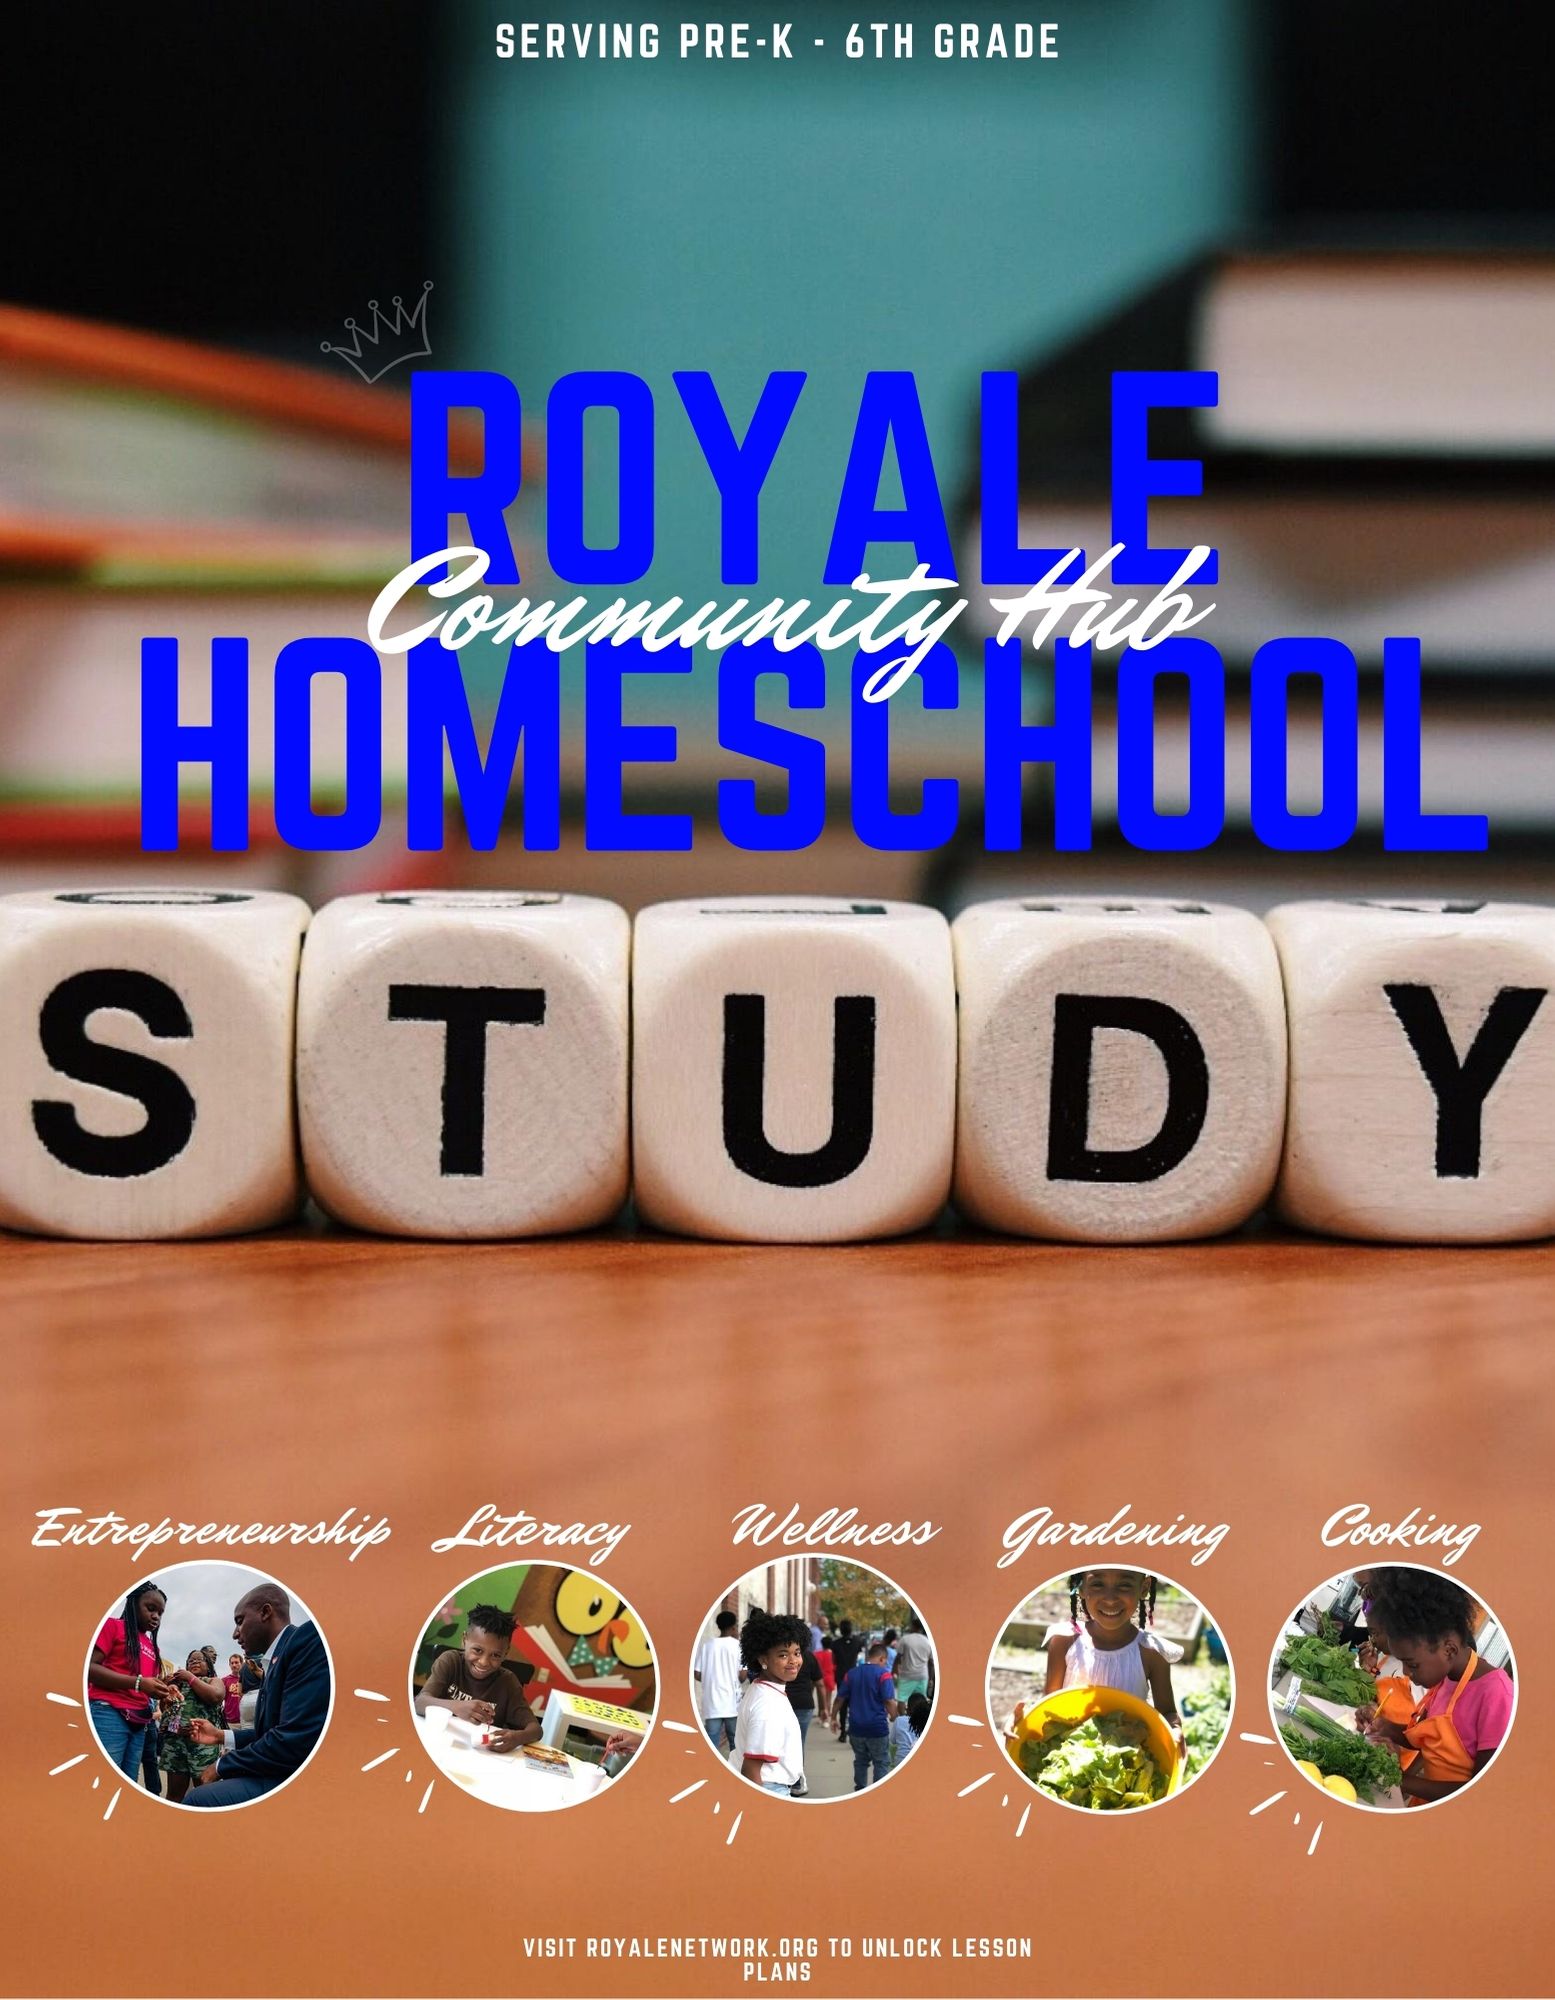 Royale homeschool